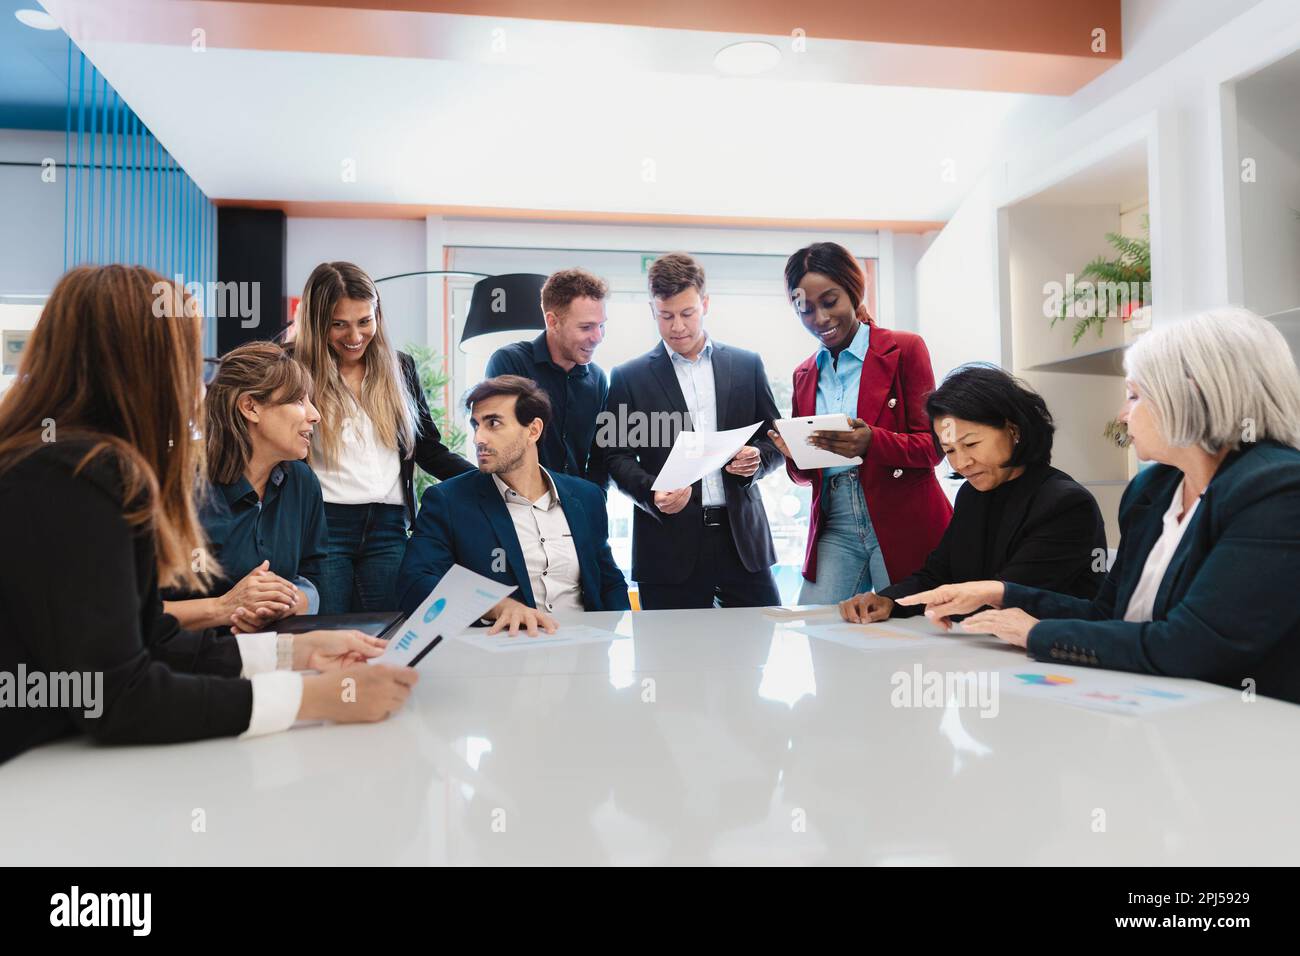 Multiethnisches Business-Team in einem Vorstandssaal moderner Büros - Konzept des Unternehmertums Stockfoto